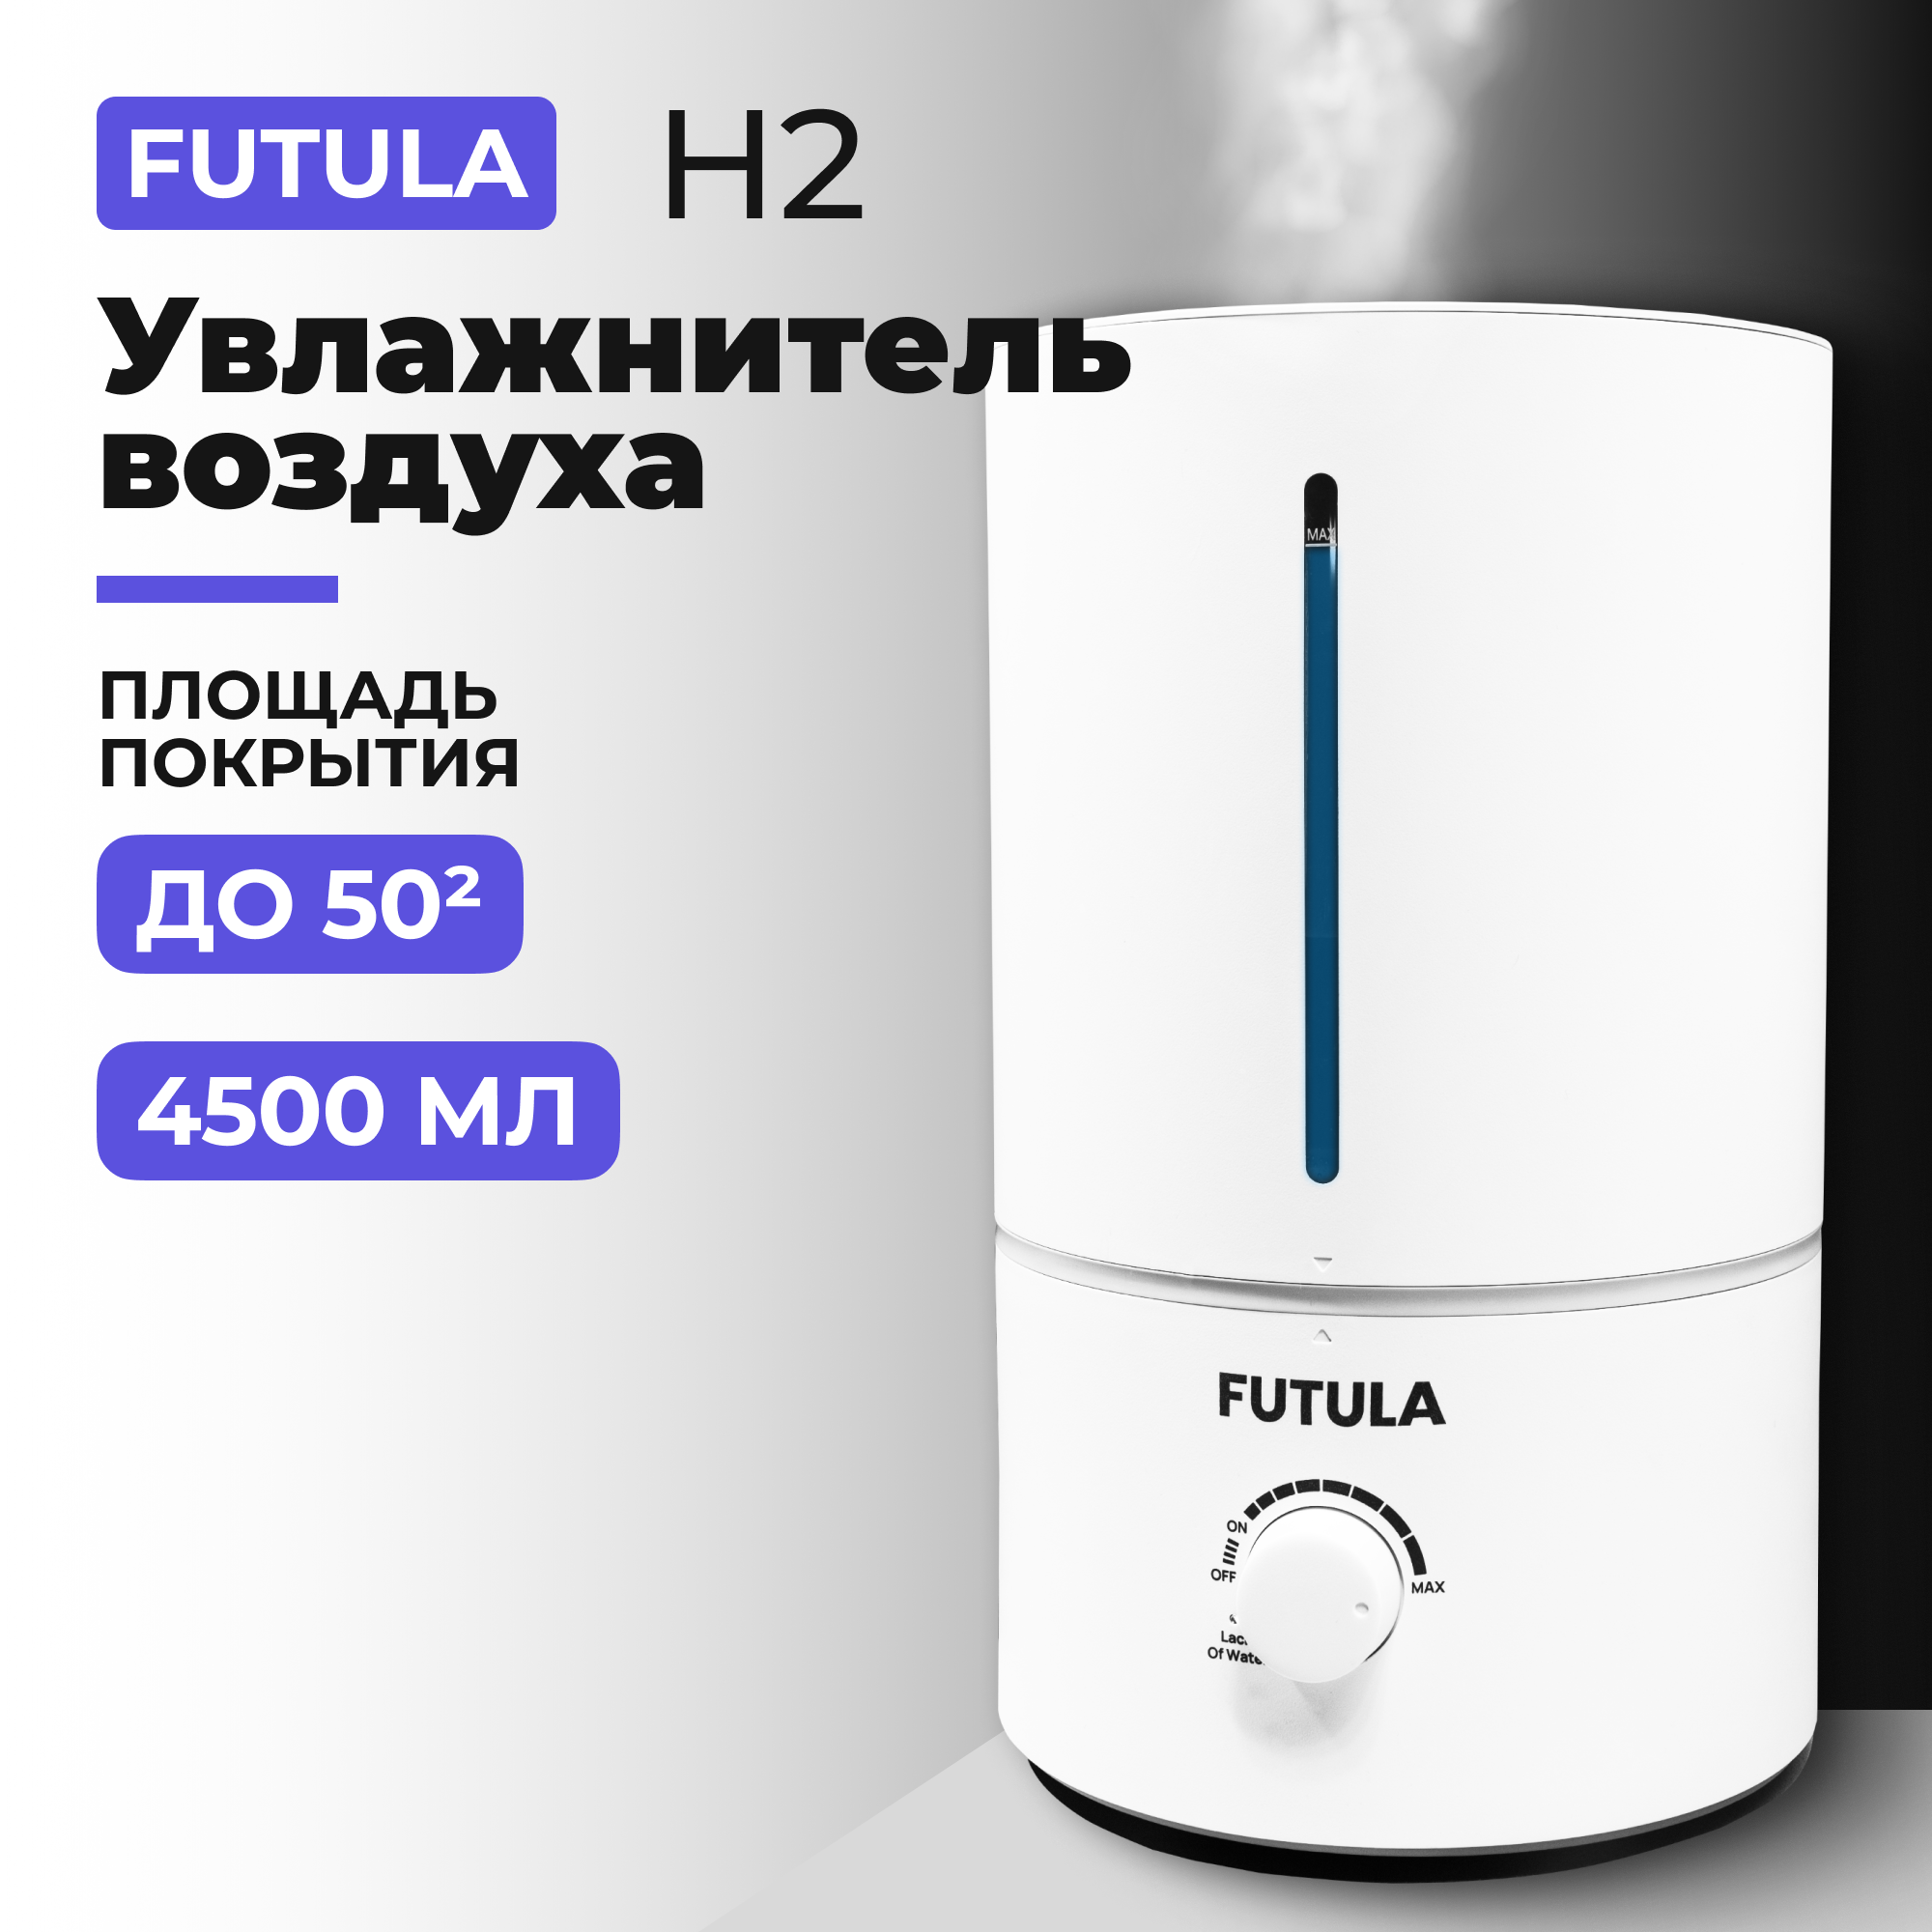 Воздухоувлажнитель Futula H2 белый